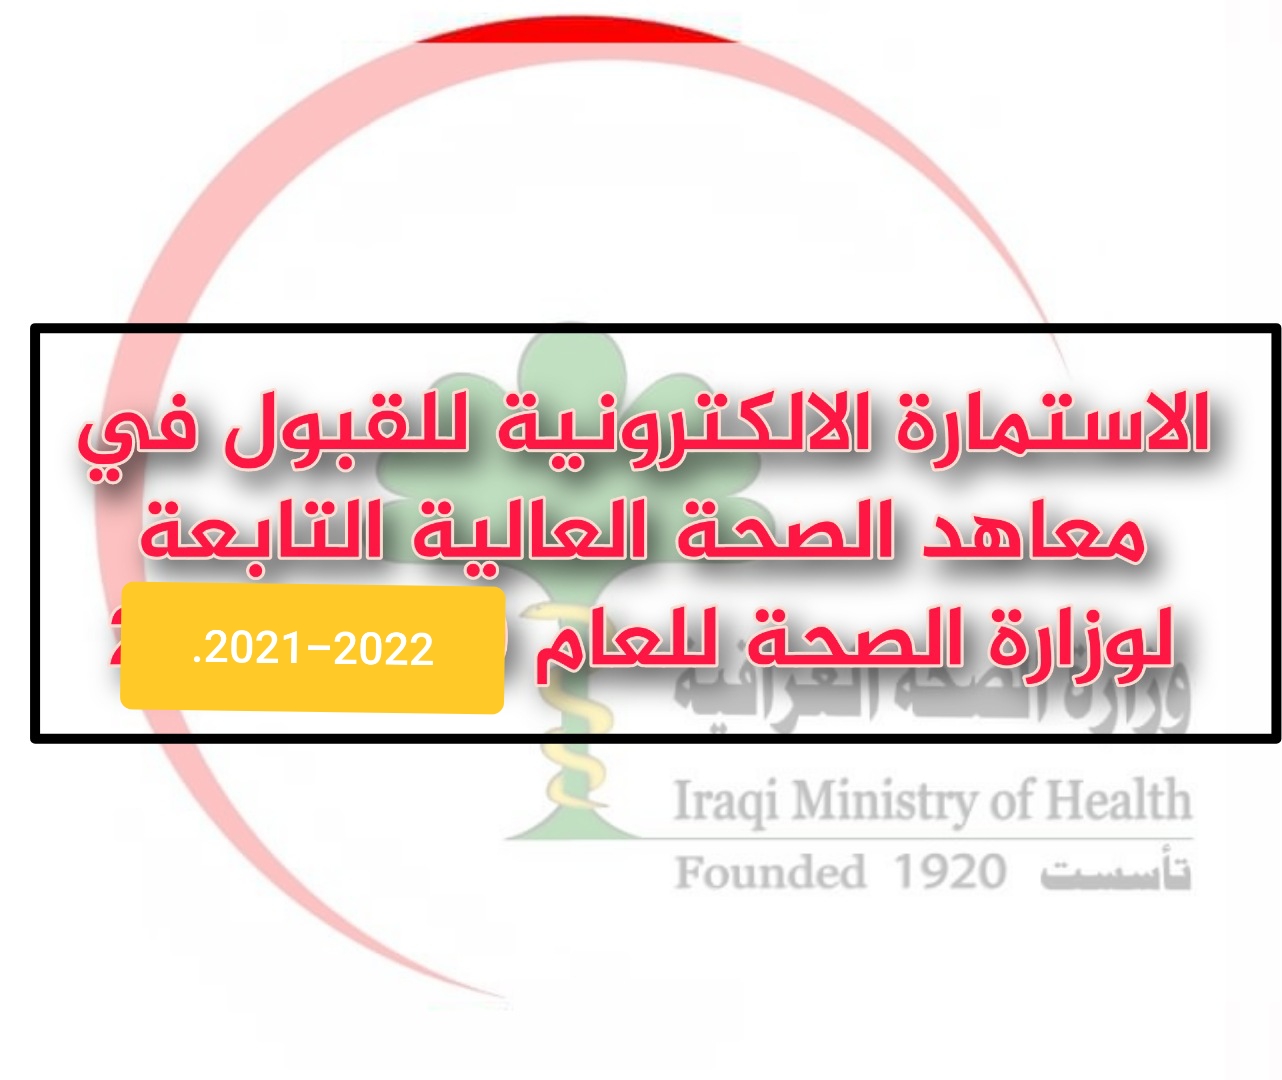 استمارة التقديم على معاهد الصحة العالية في بغداد والمحافظات للعام 2021 - 2022 + شروط وضوابط القبول ومعلومات عن معهد الصحة العالي التابع لوزارة الصحة